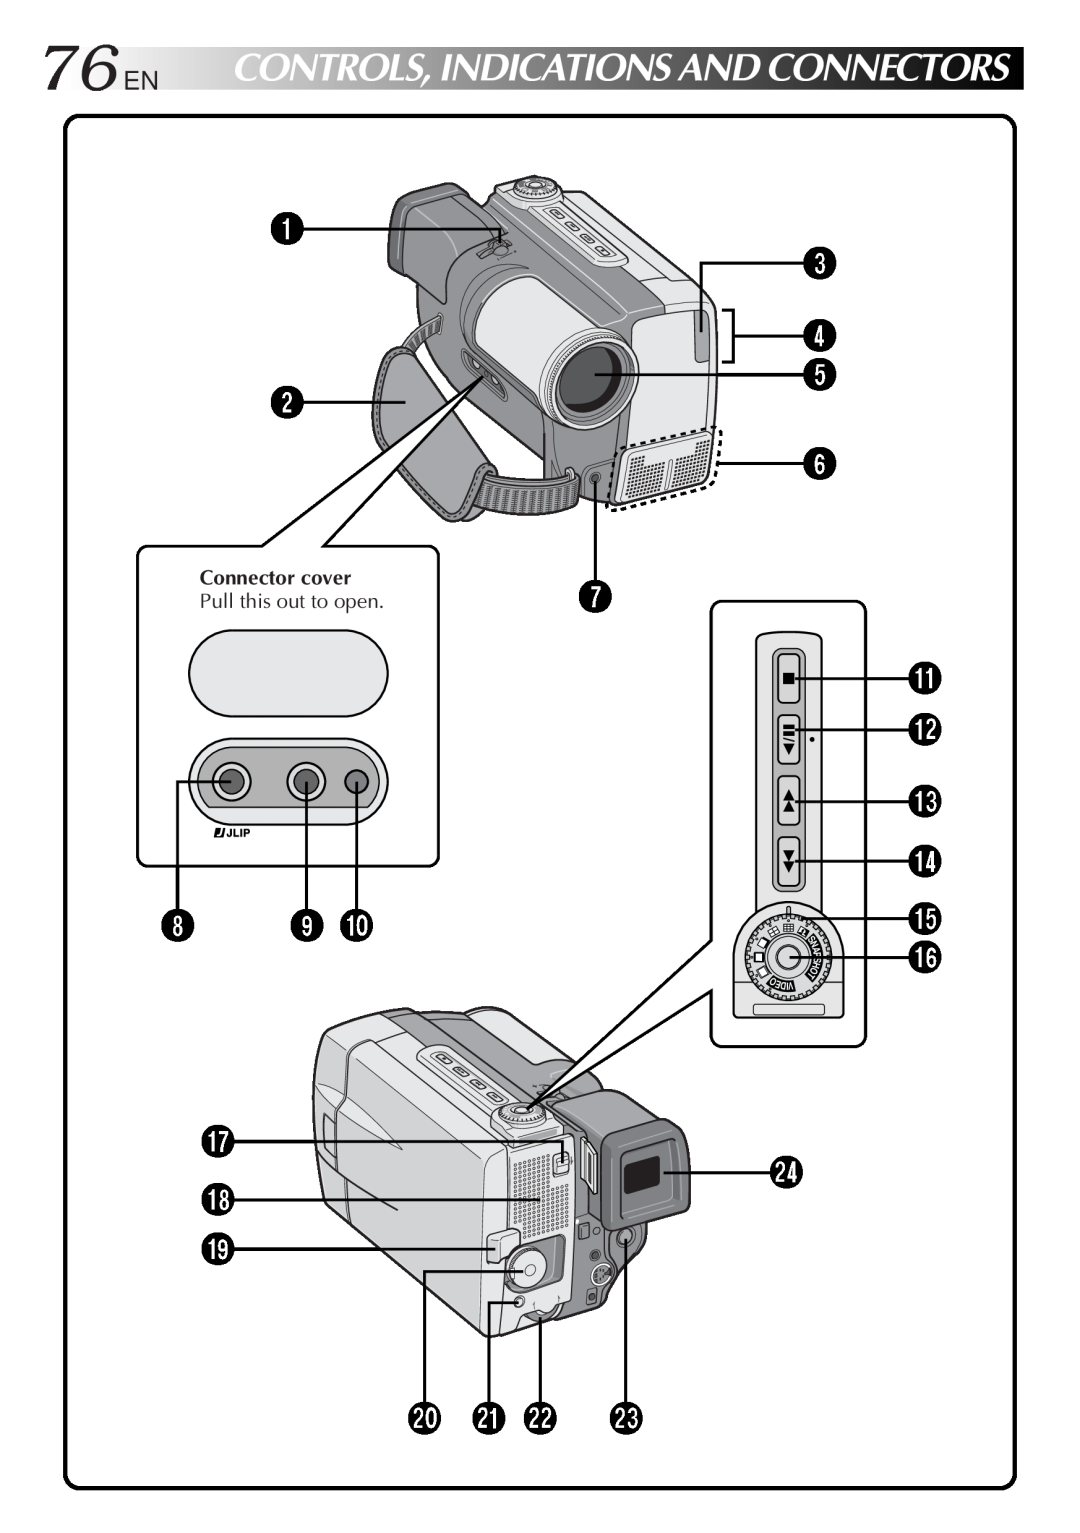 JVC GR-DVL9000 manual 76EN, 89, 3 4 5 6 7, @ # $ %, q w e, Controls,Indicationsandconnectors, Connector cover, Ediv 